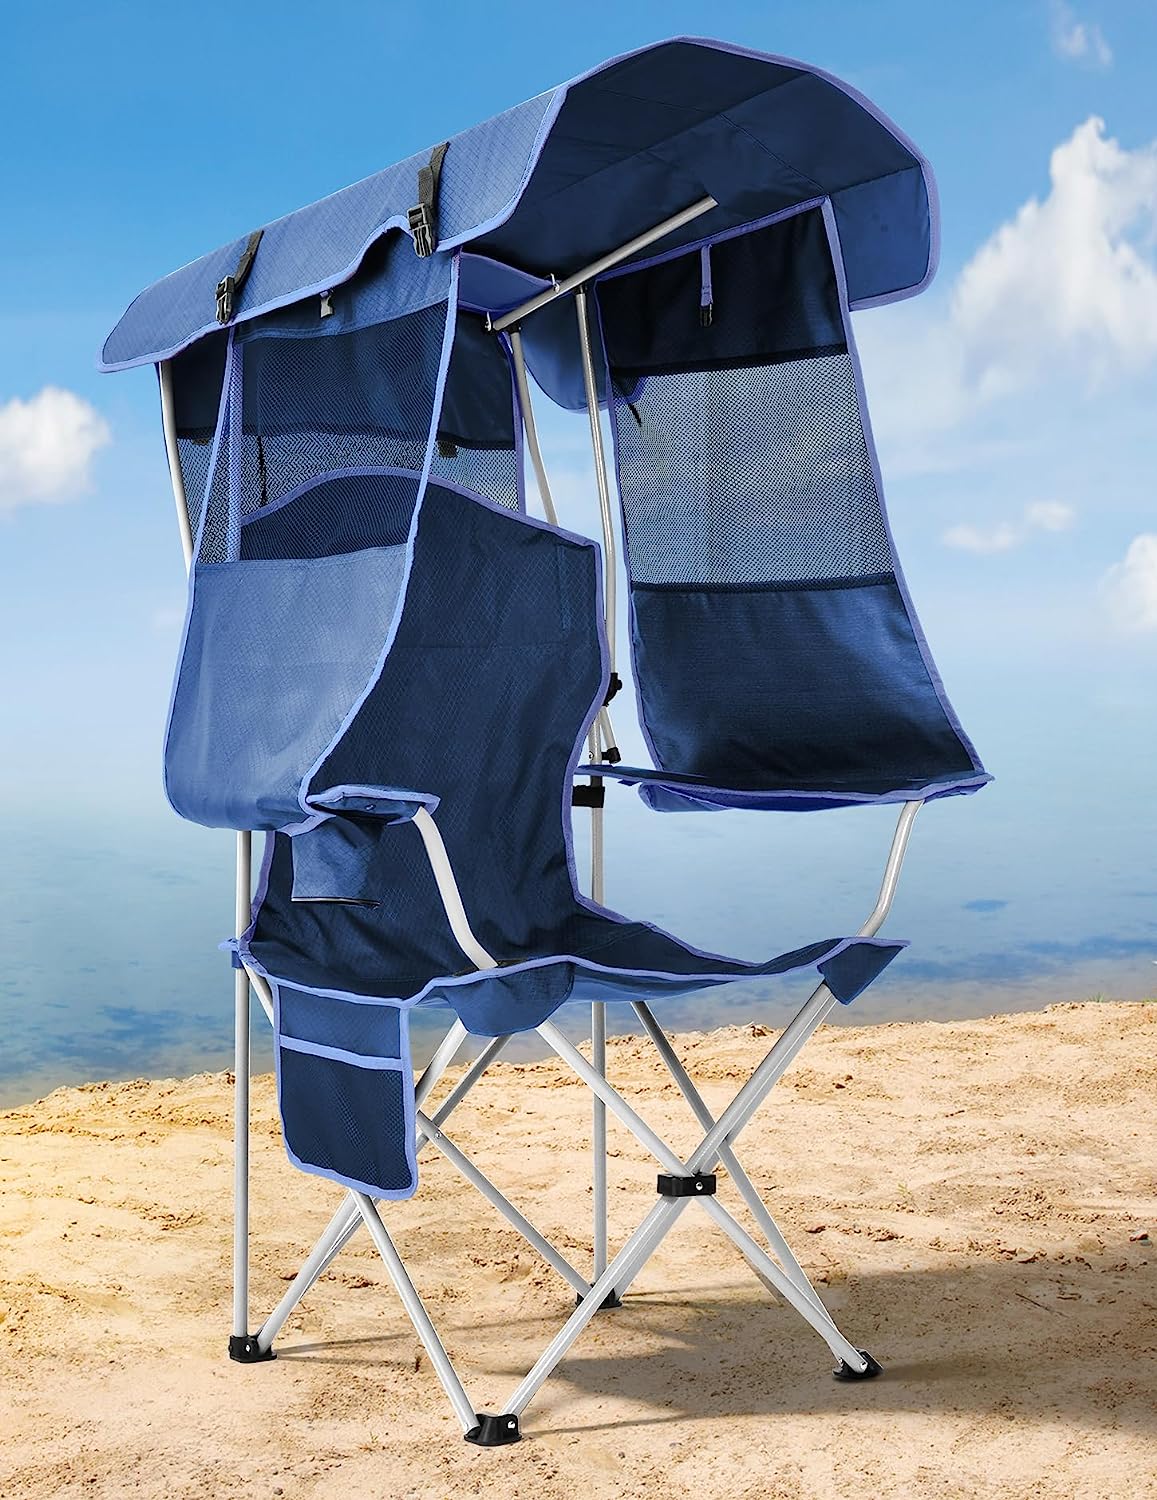 Docusvect Beach Chair with Canopy Shade, Canopy Beach [...]